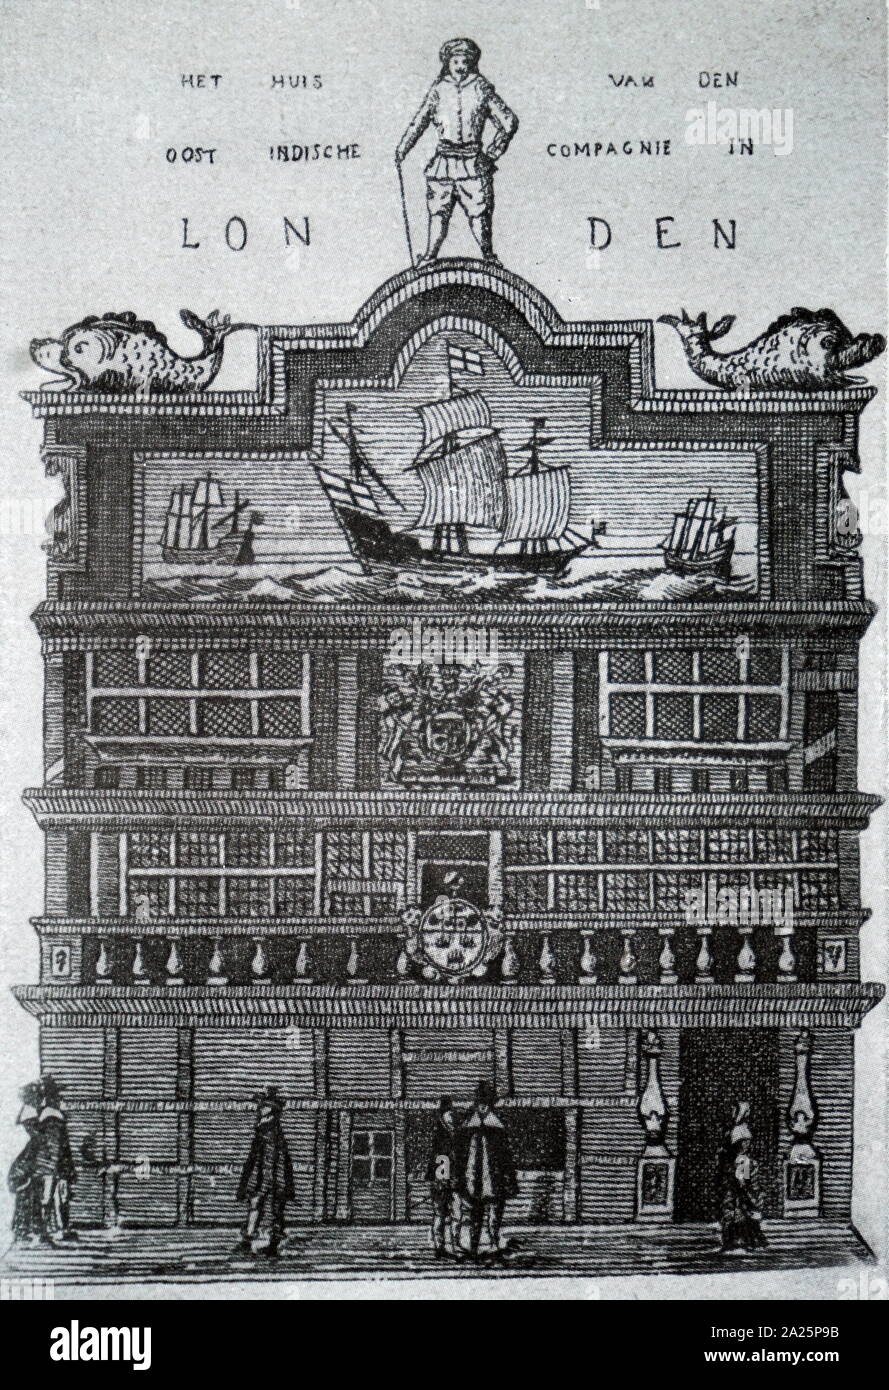 Gravure sur bois représentant la société mère de la East India Company Banque D'Images